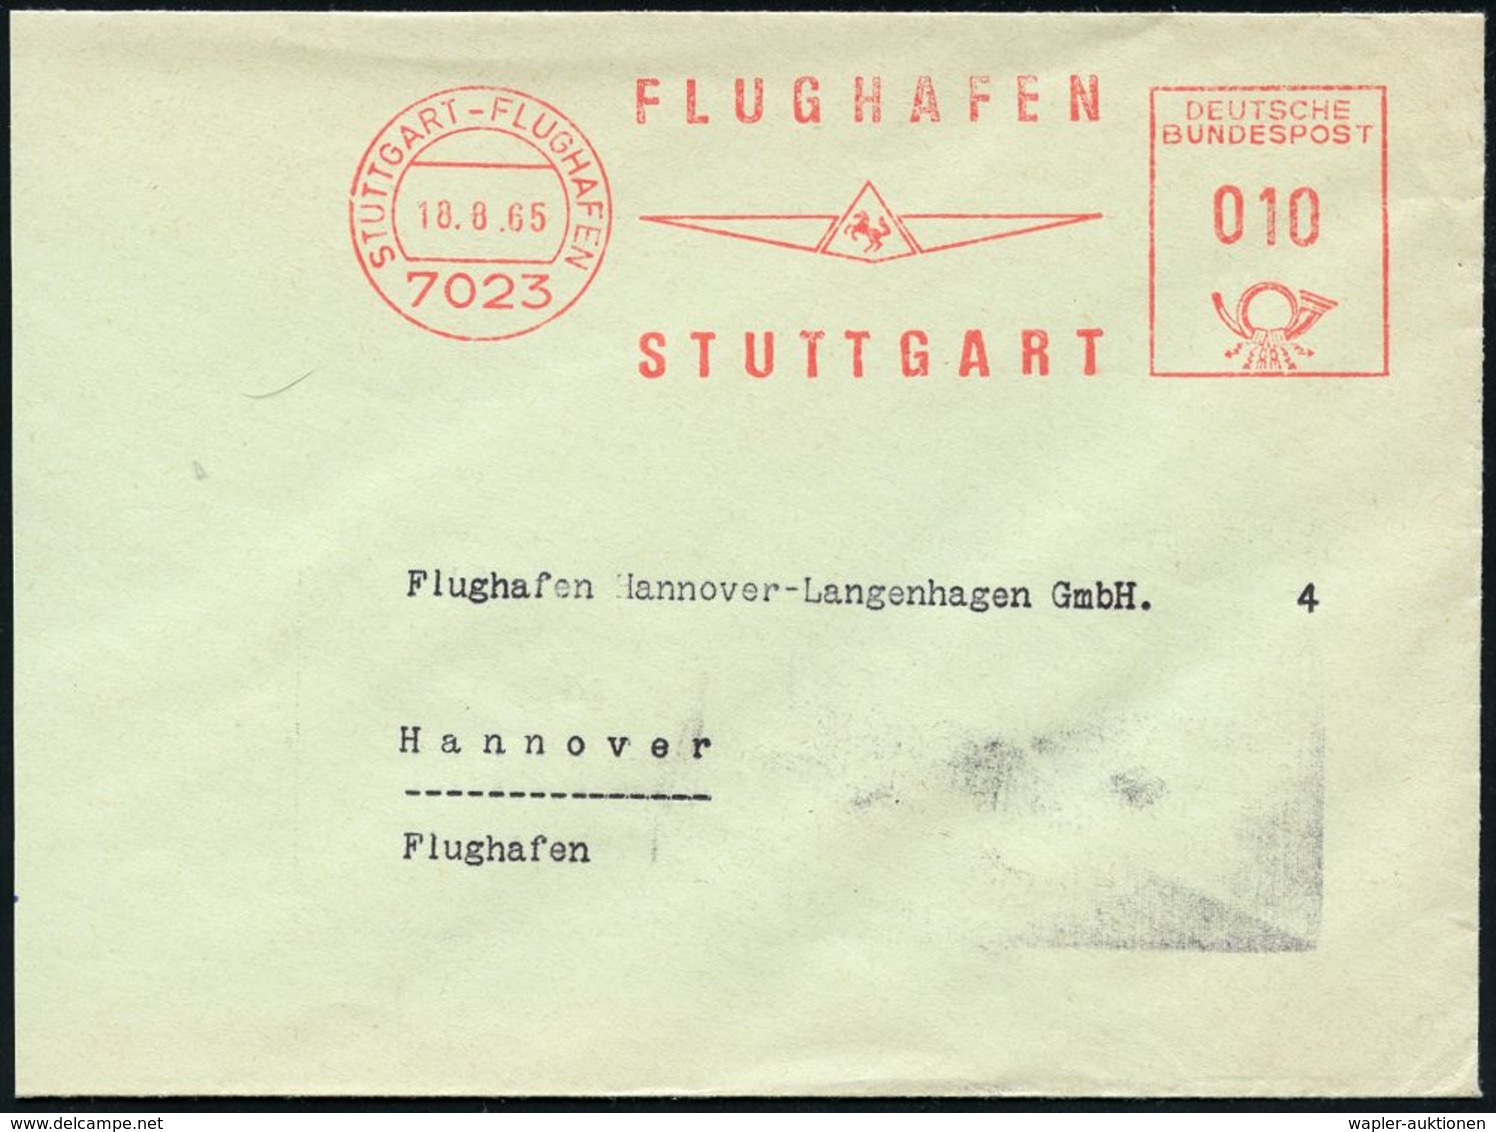 FLUGHAFEN / FLUGHAFEN-POSTÄMTER : 7023 STUTTGART-FLUGHAFENFLUGHAFEN/ STUTTGART 1971 (18.8.) AFS (Logo M. Pferd) Teil-Bf. - Autres (Air)